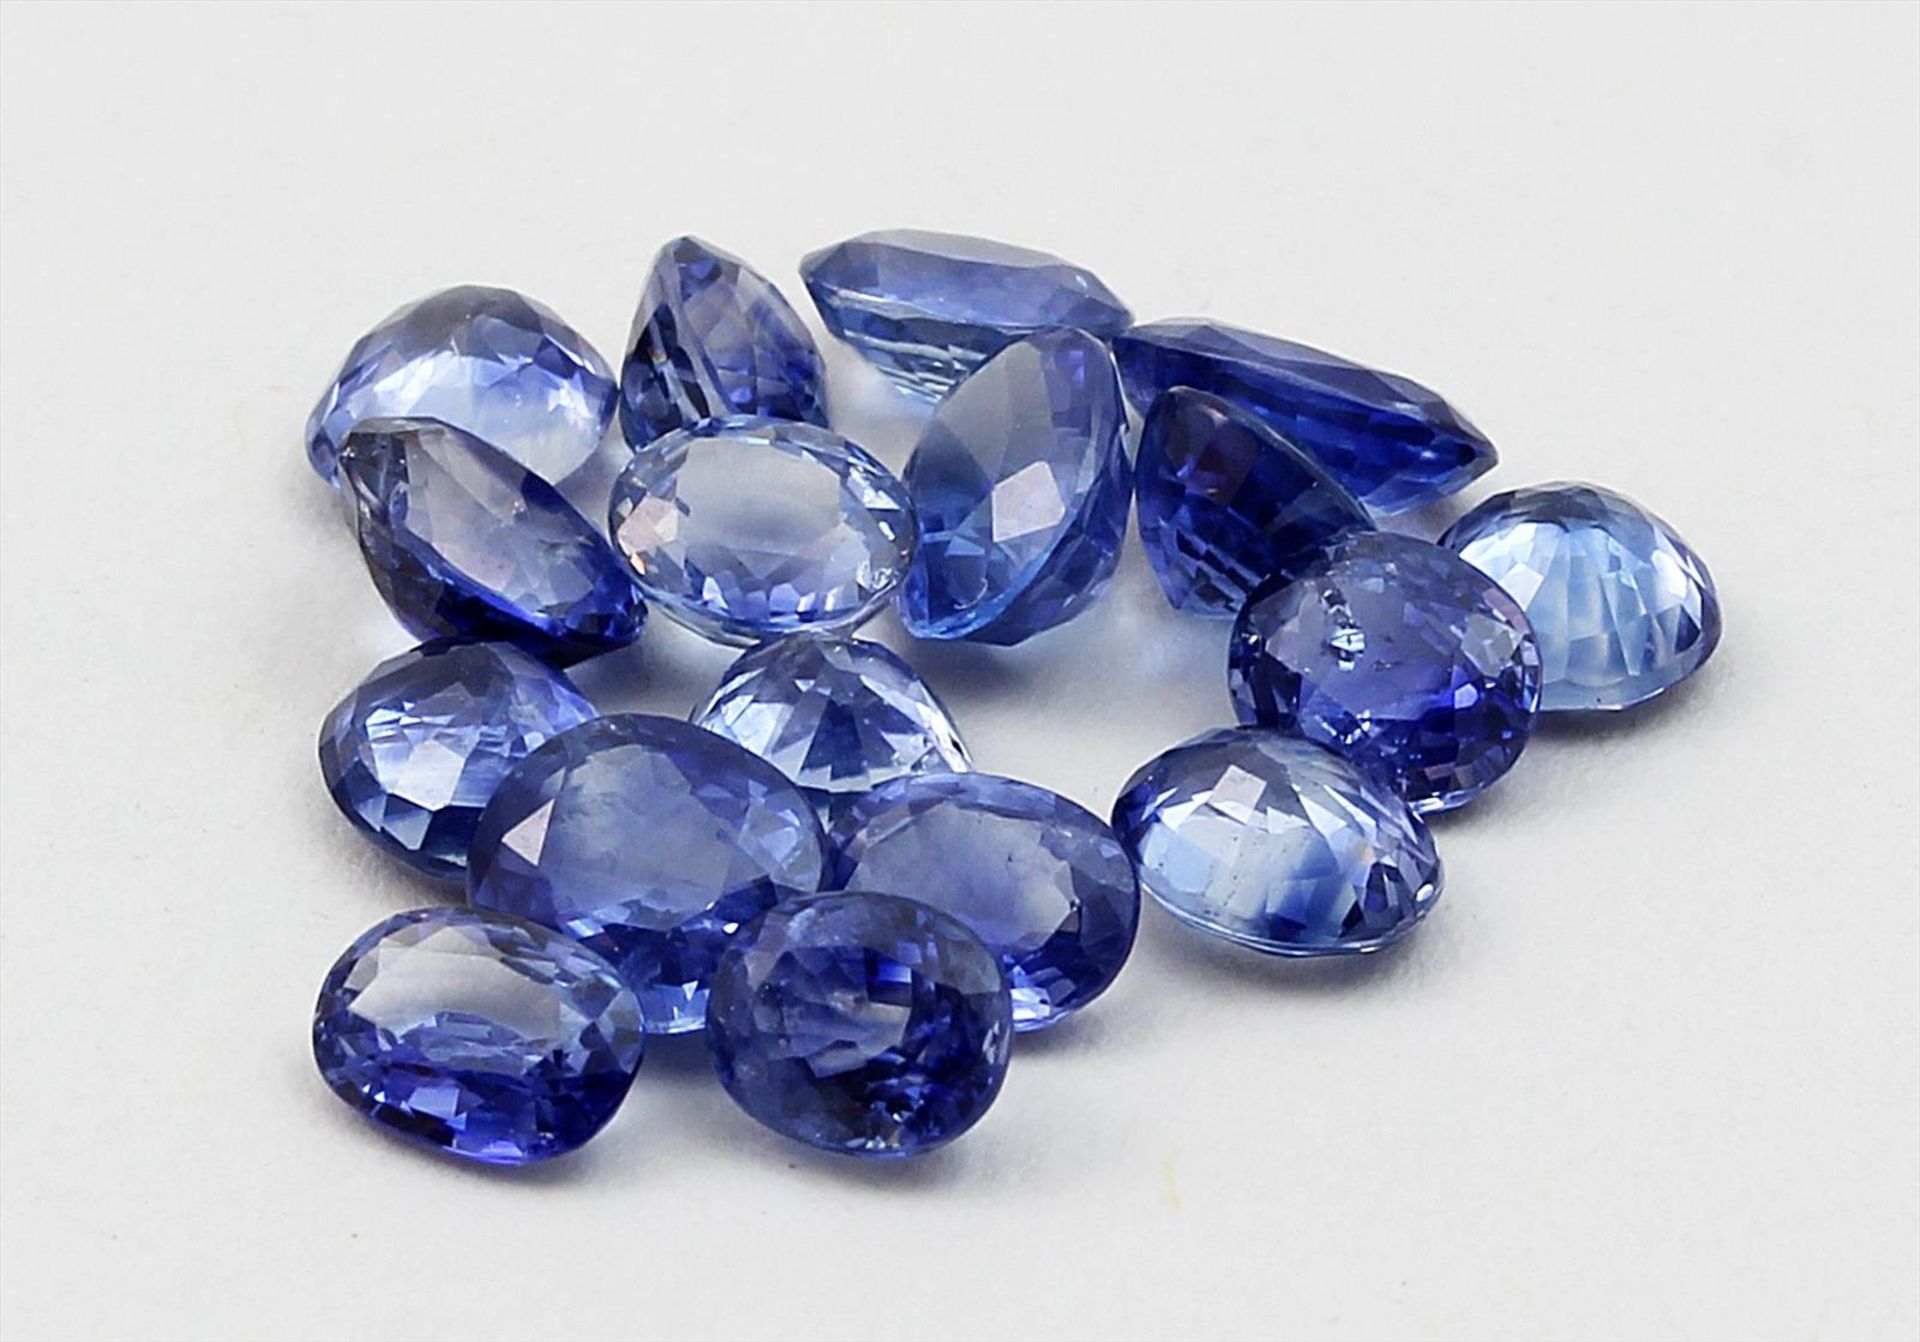 17 blaue Saphire, zus. 8,1 ct.Überwiegend oval facettiert in l. abweichender Größe und Farbe.